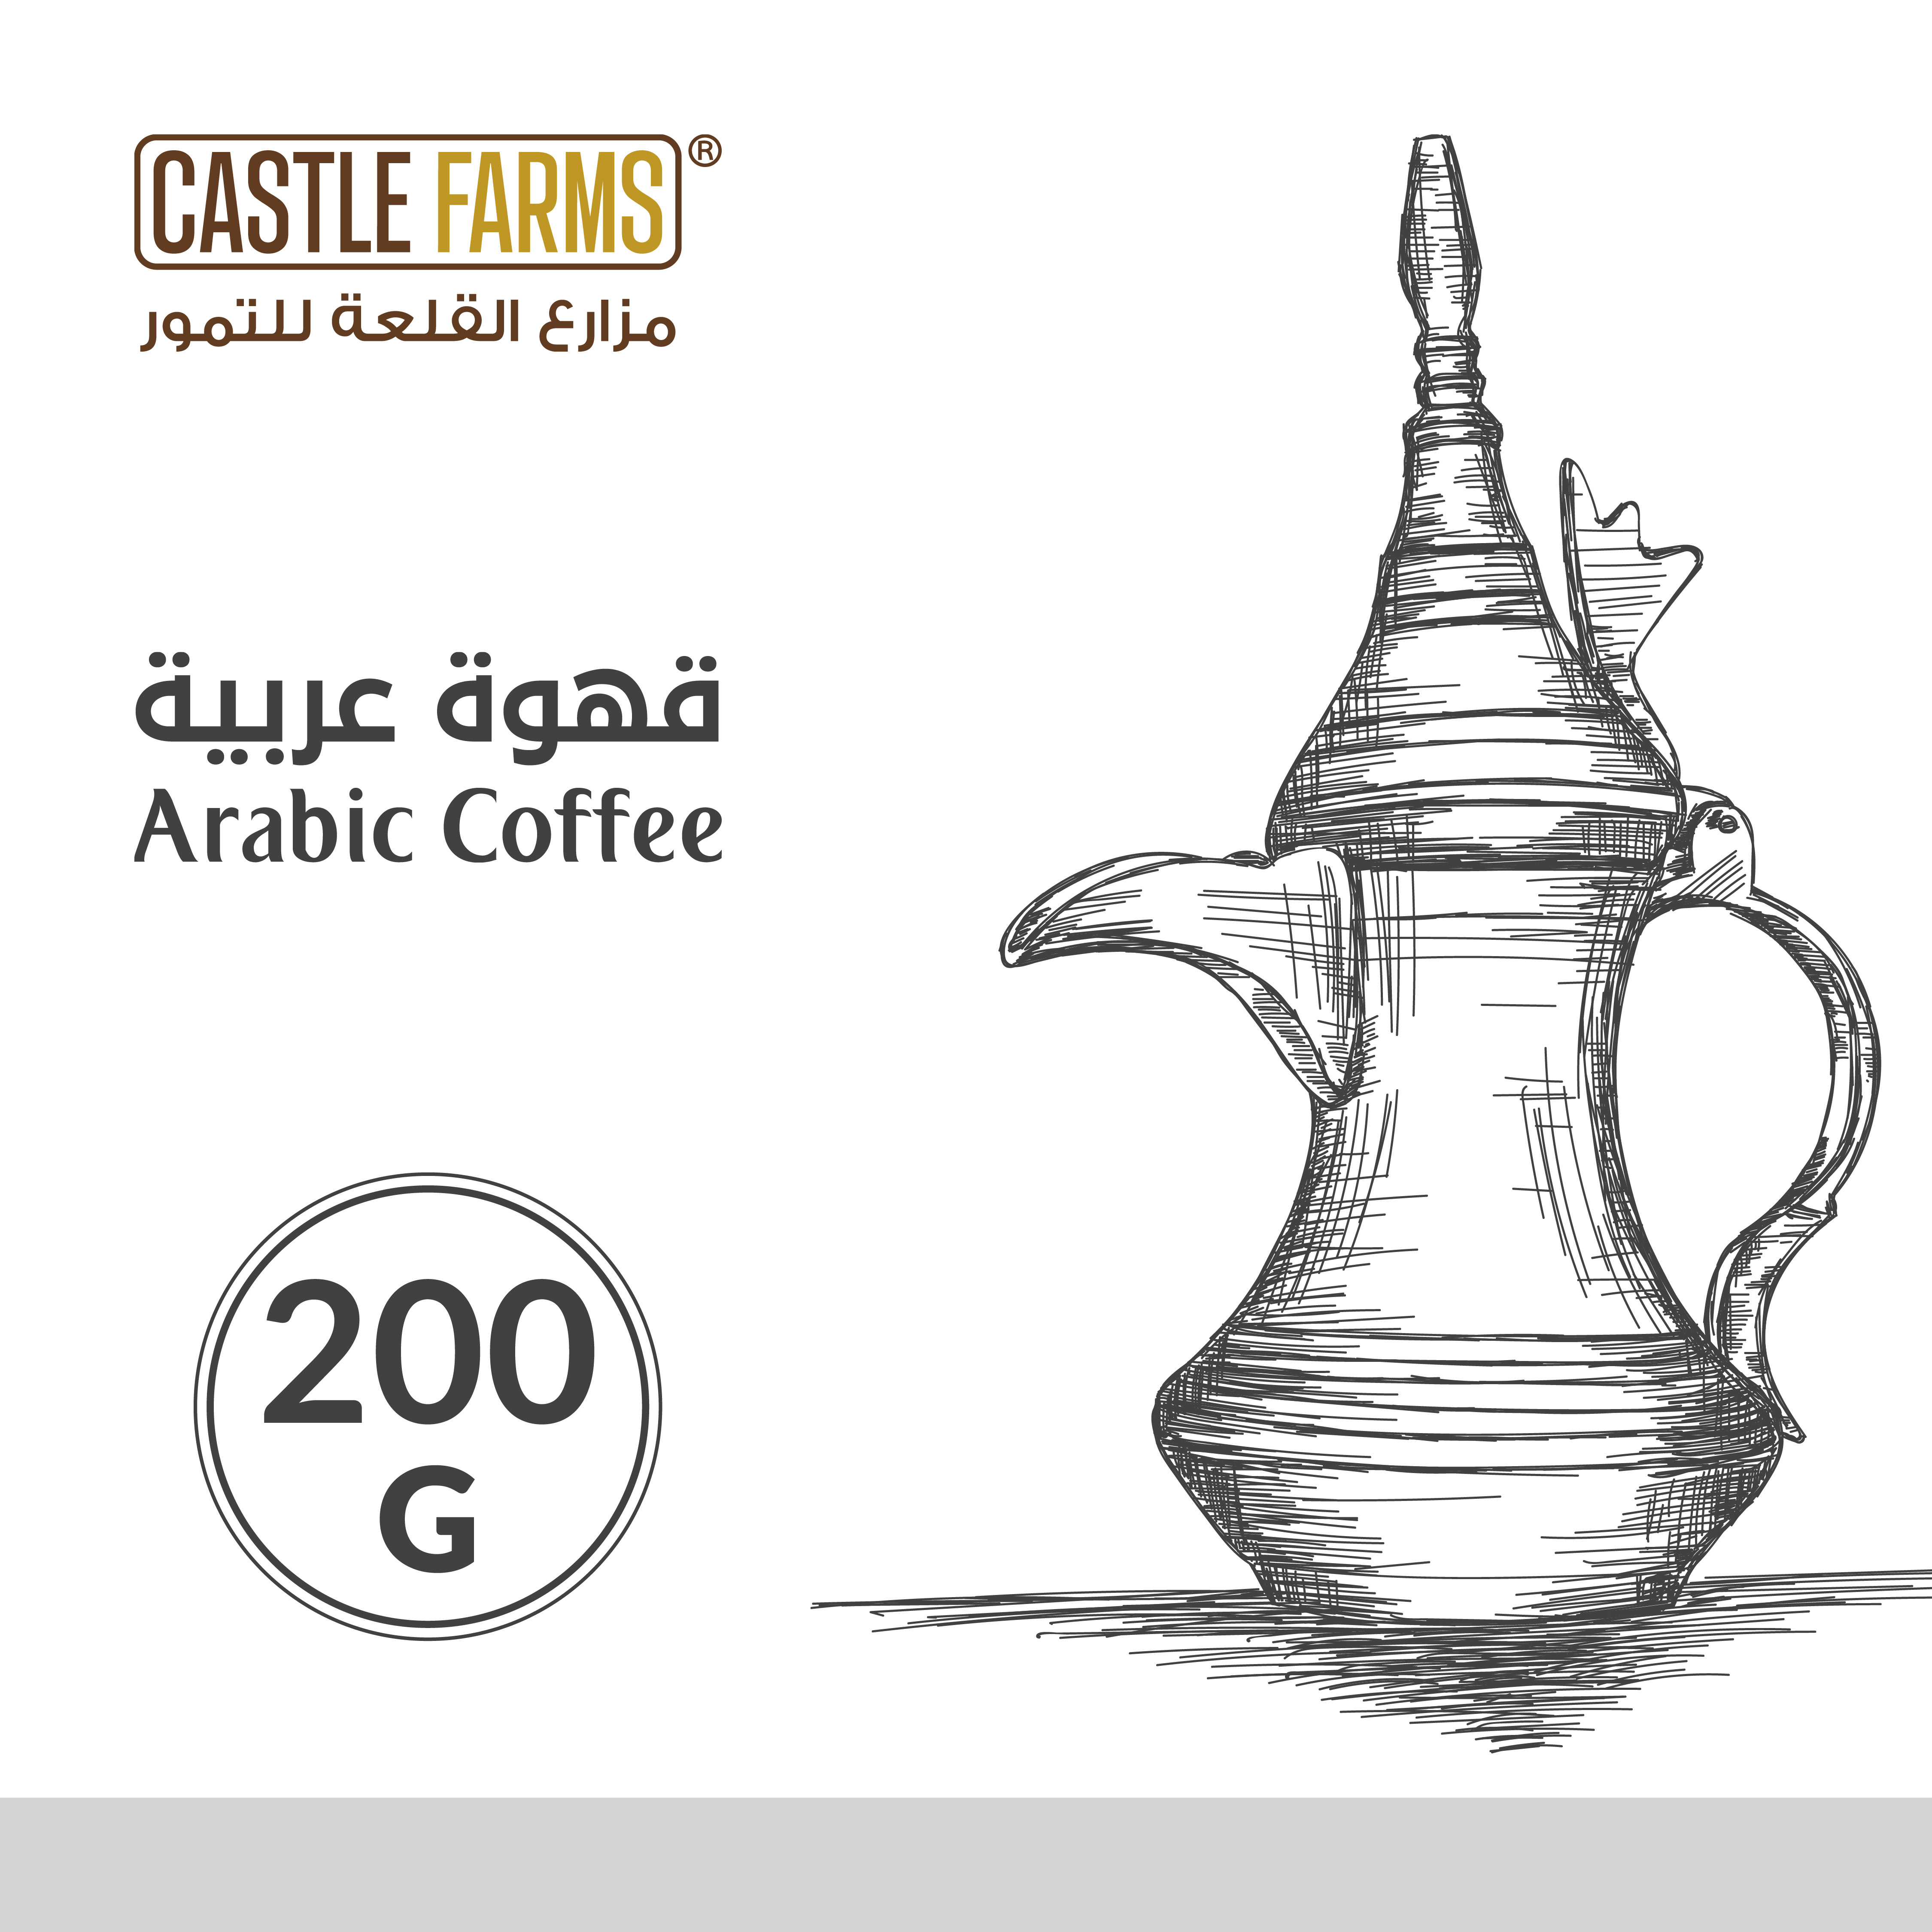 قهوة سعودية